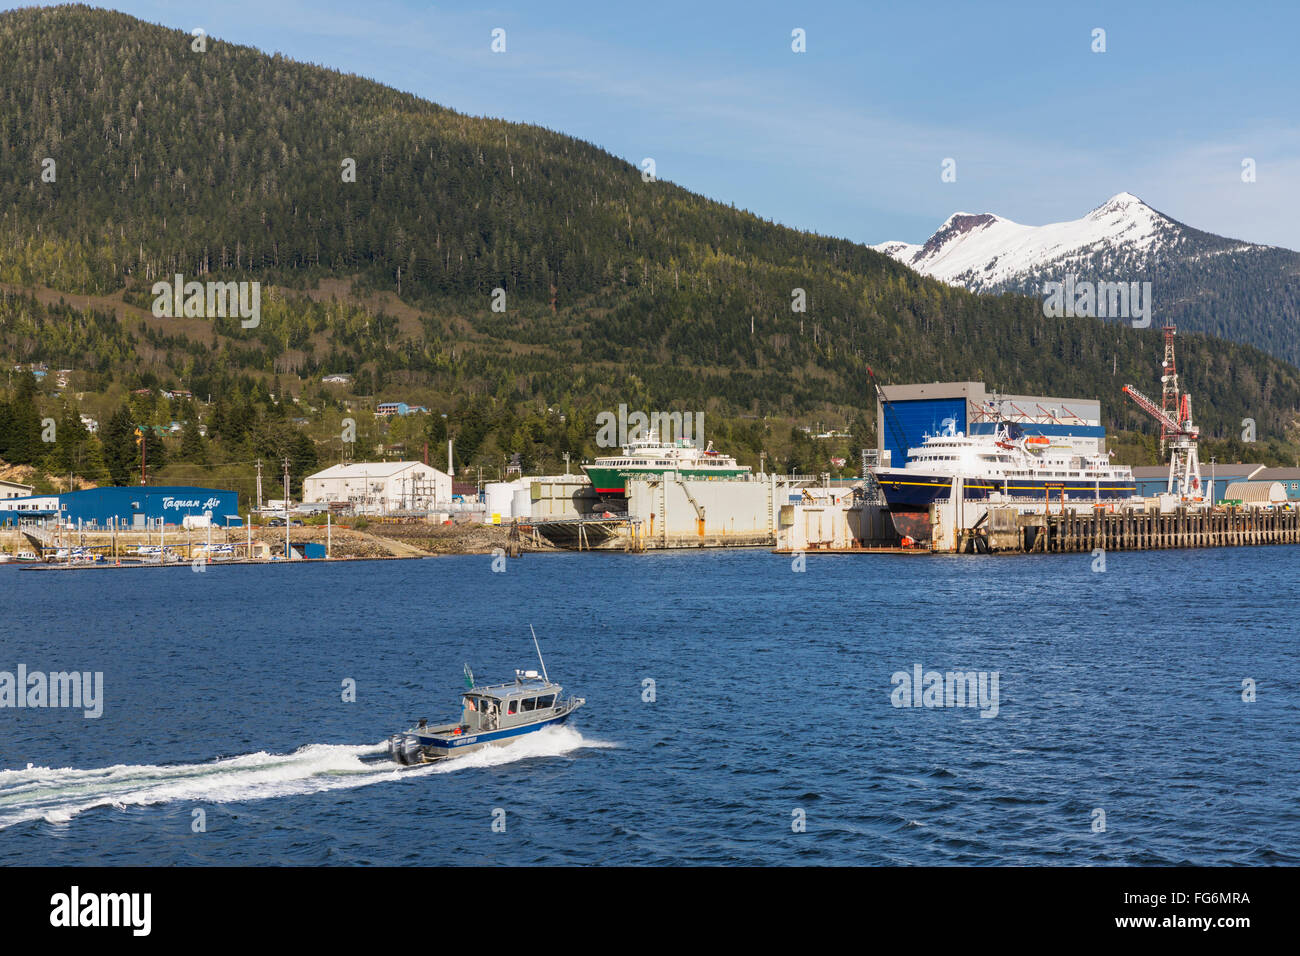 Une location de bateau de pêche passe devant le front de docks et chantiers navals, Ketchikan, Alaska du Sud-Est, le ressort Banque D'Images